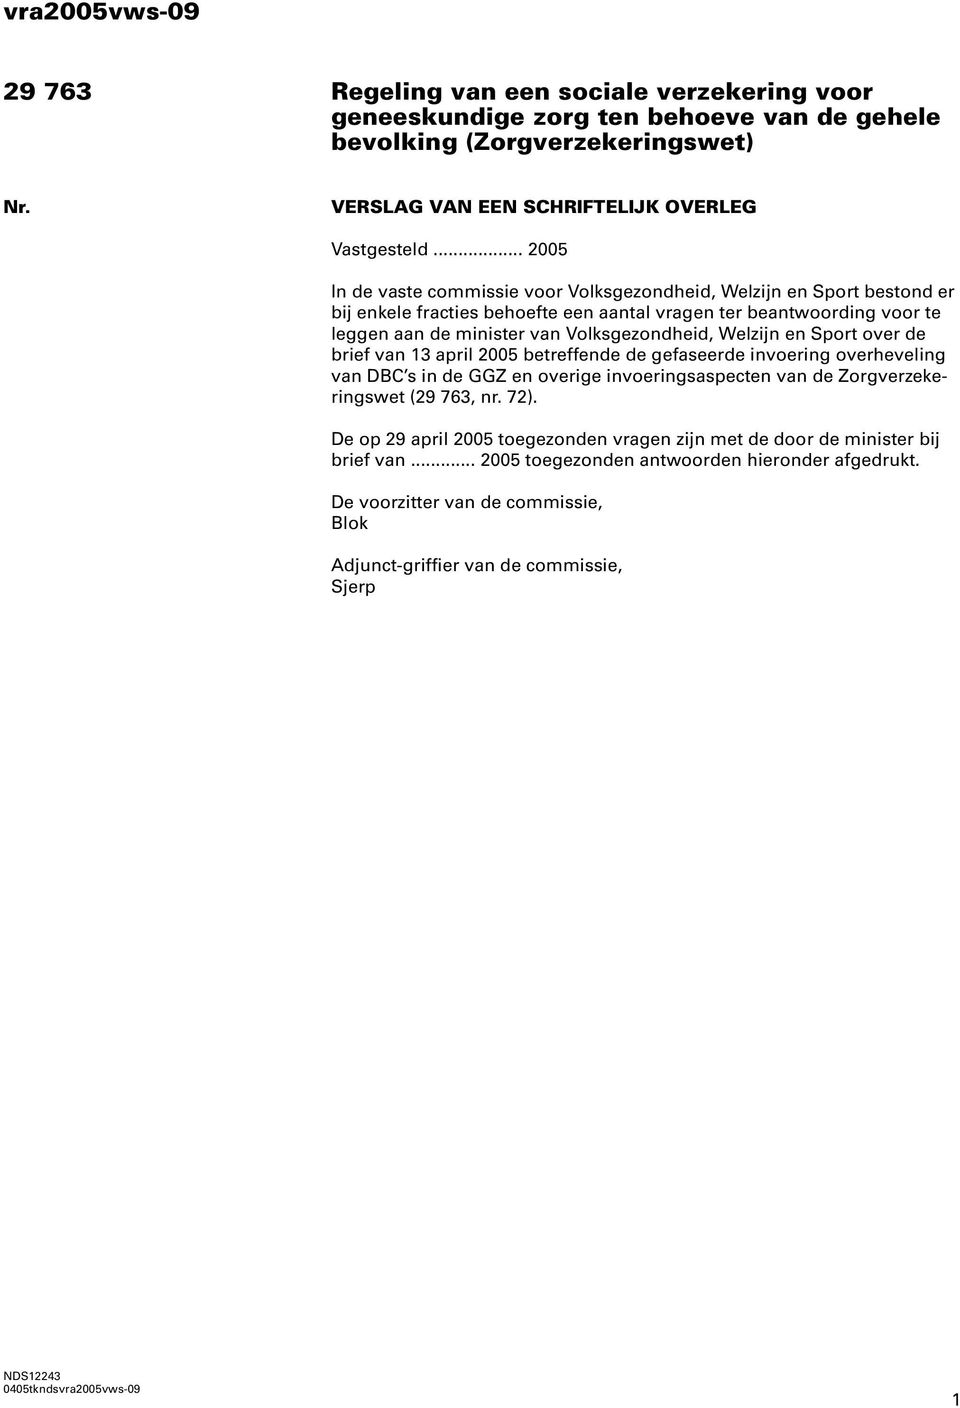 Welzijn en Sport over de brief van 13 april 2005 betreffende de gefaseerde invoering overheveling van DBC s in de GGZ en overige invoeringsaspecten van de Zorgverzekeringswet (29 763, nr. 72).